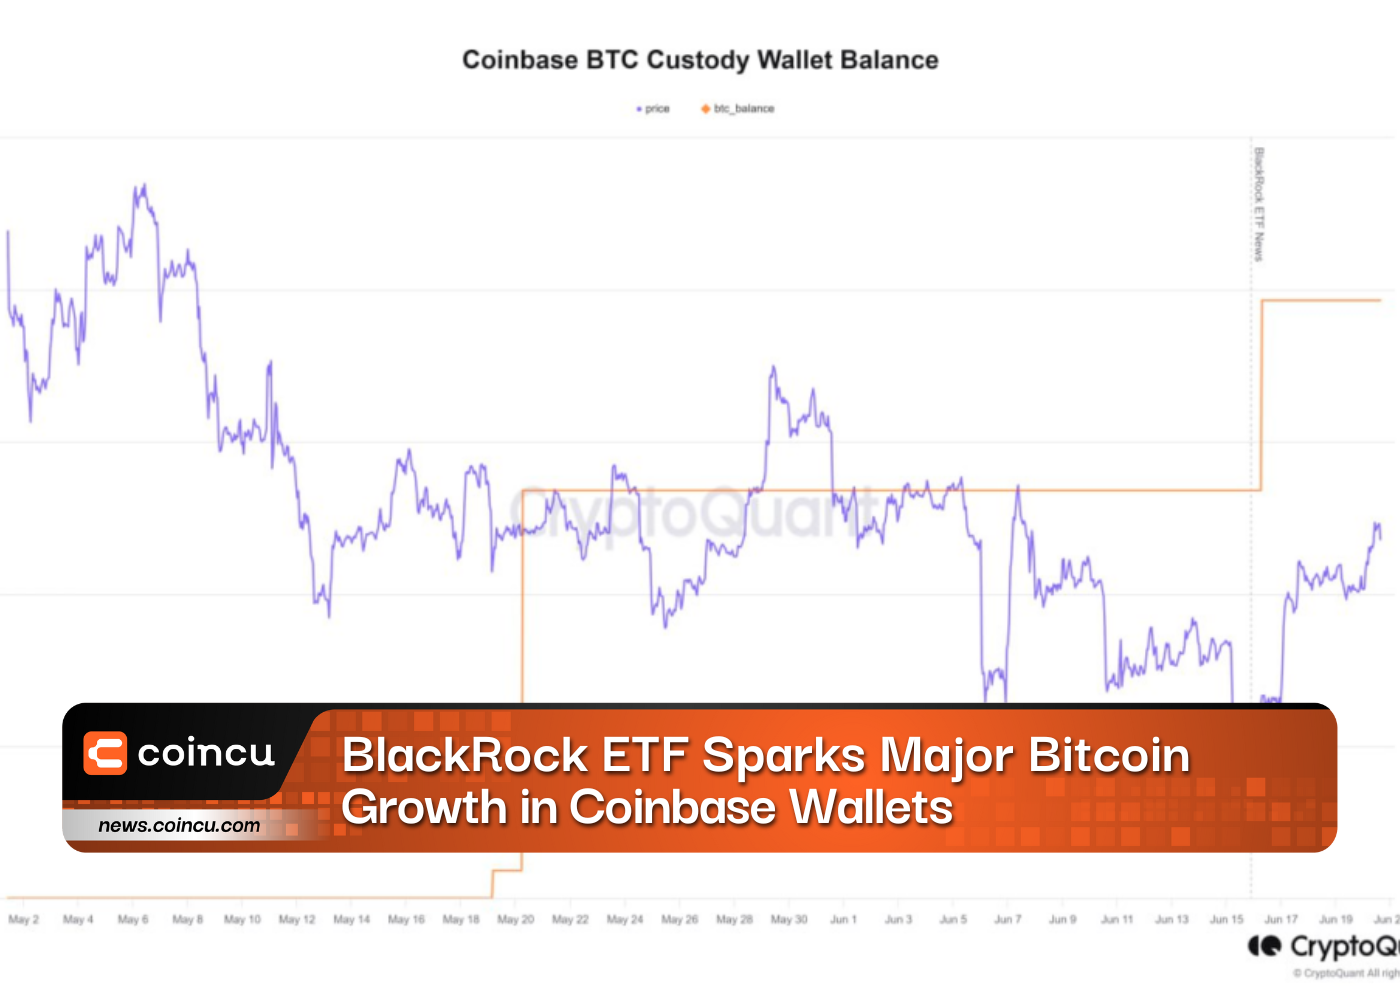 BlackRock ETF Sparks Major Bitcoin